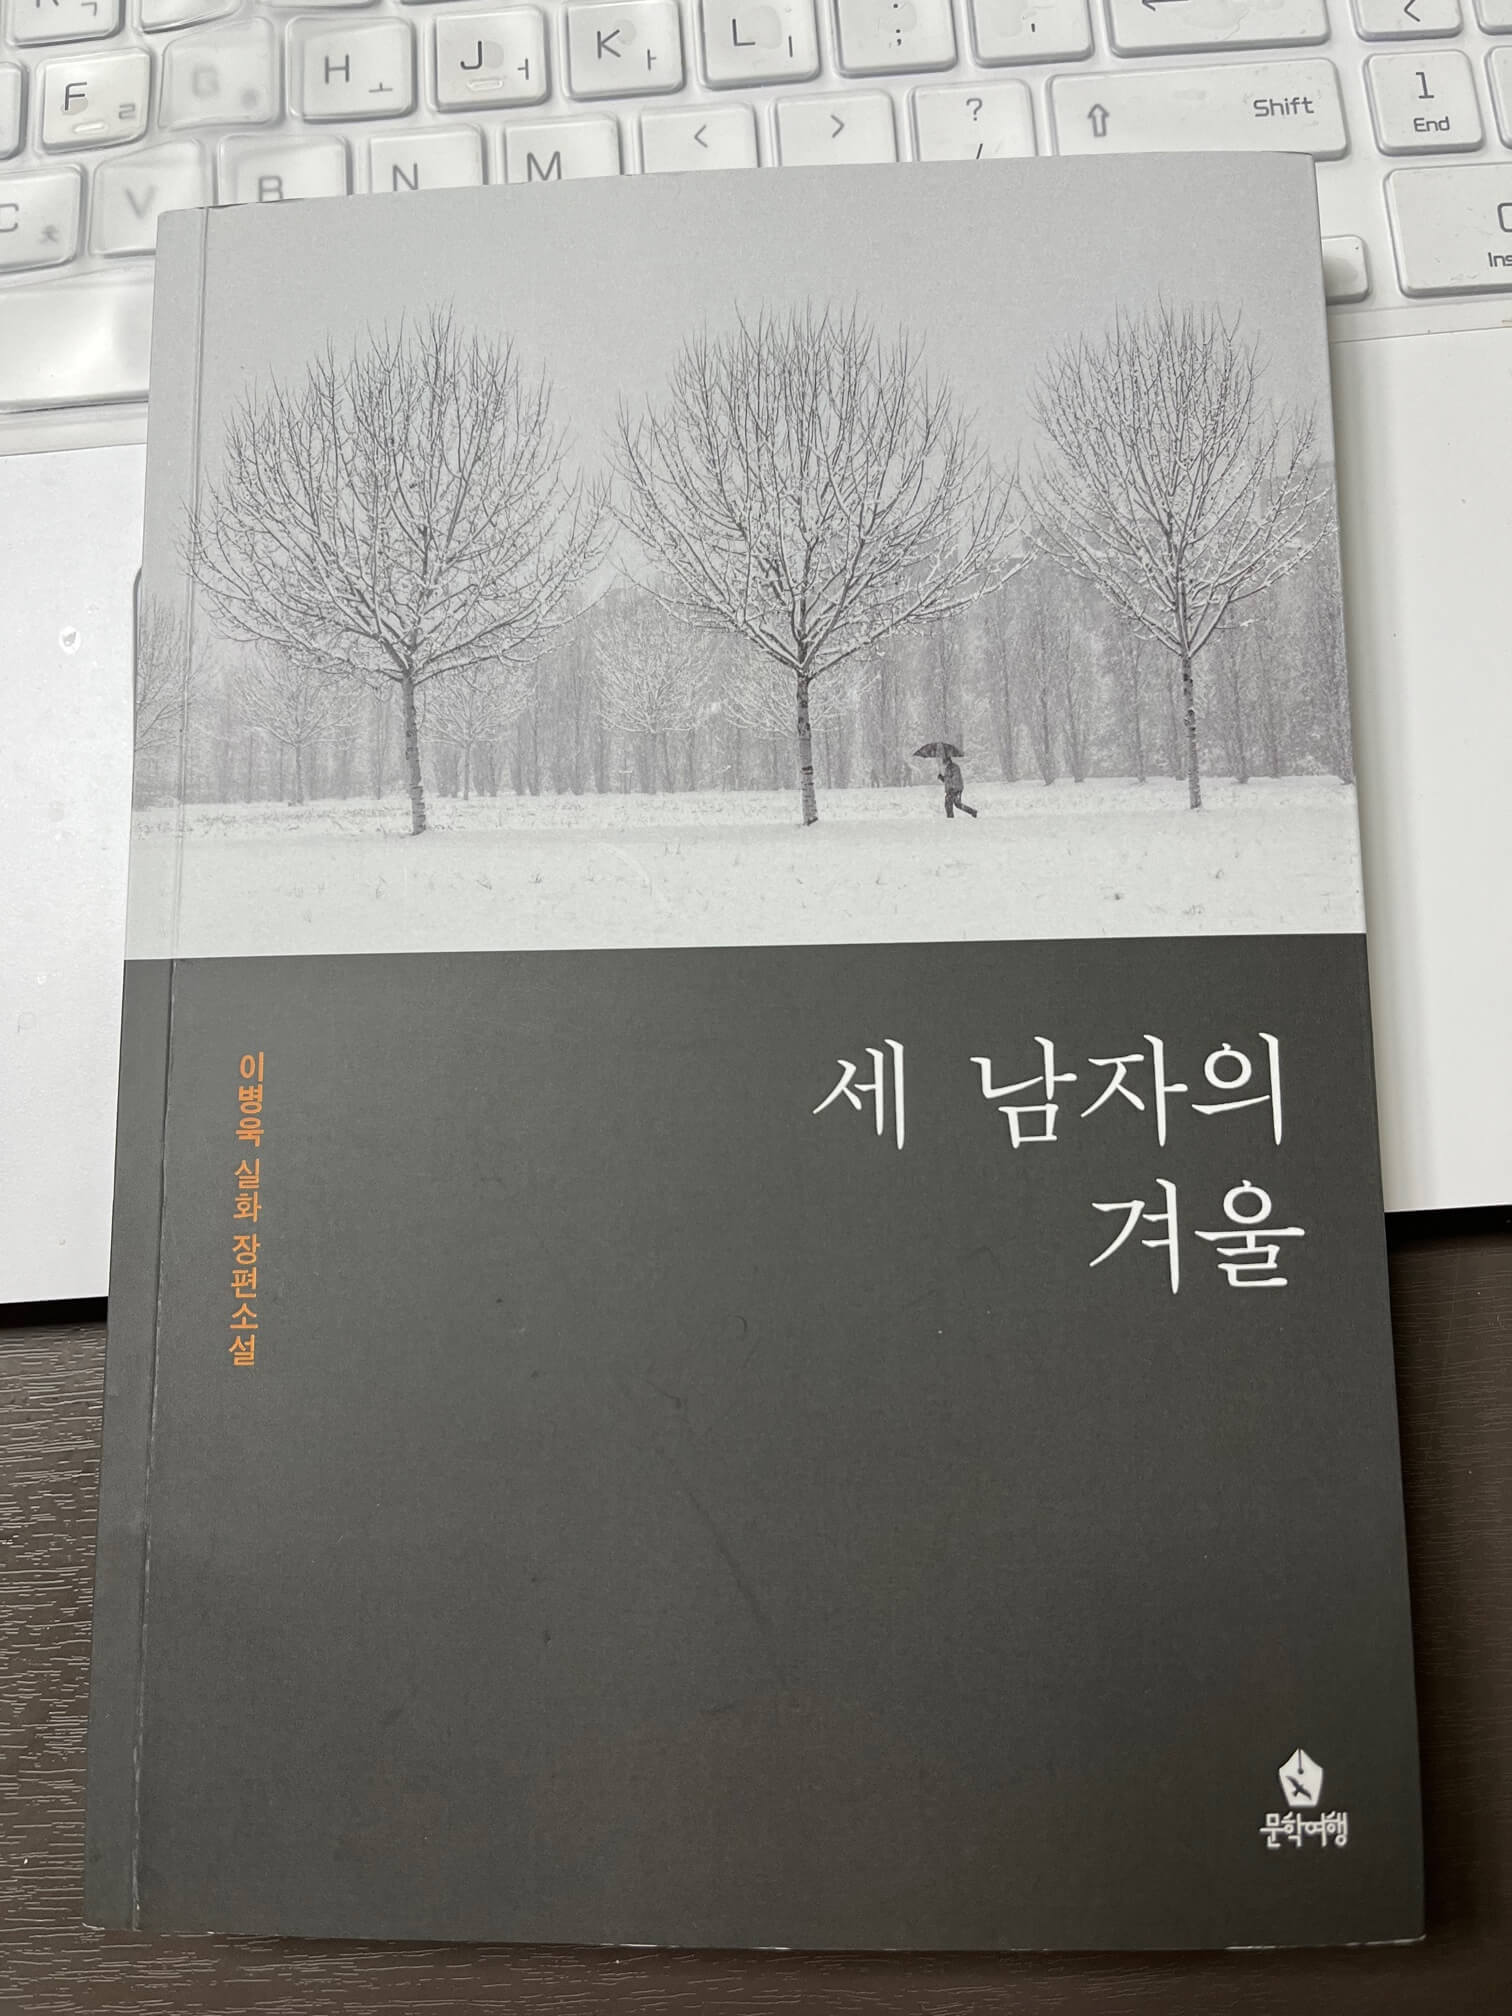 이병욱의 세번째 신간 실화장편소설 세 남자의 겨울